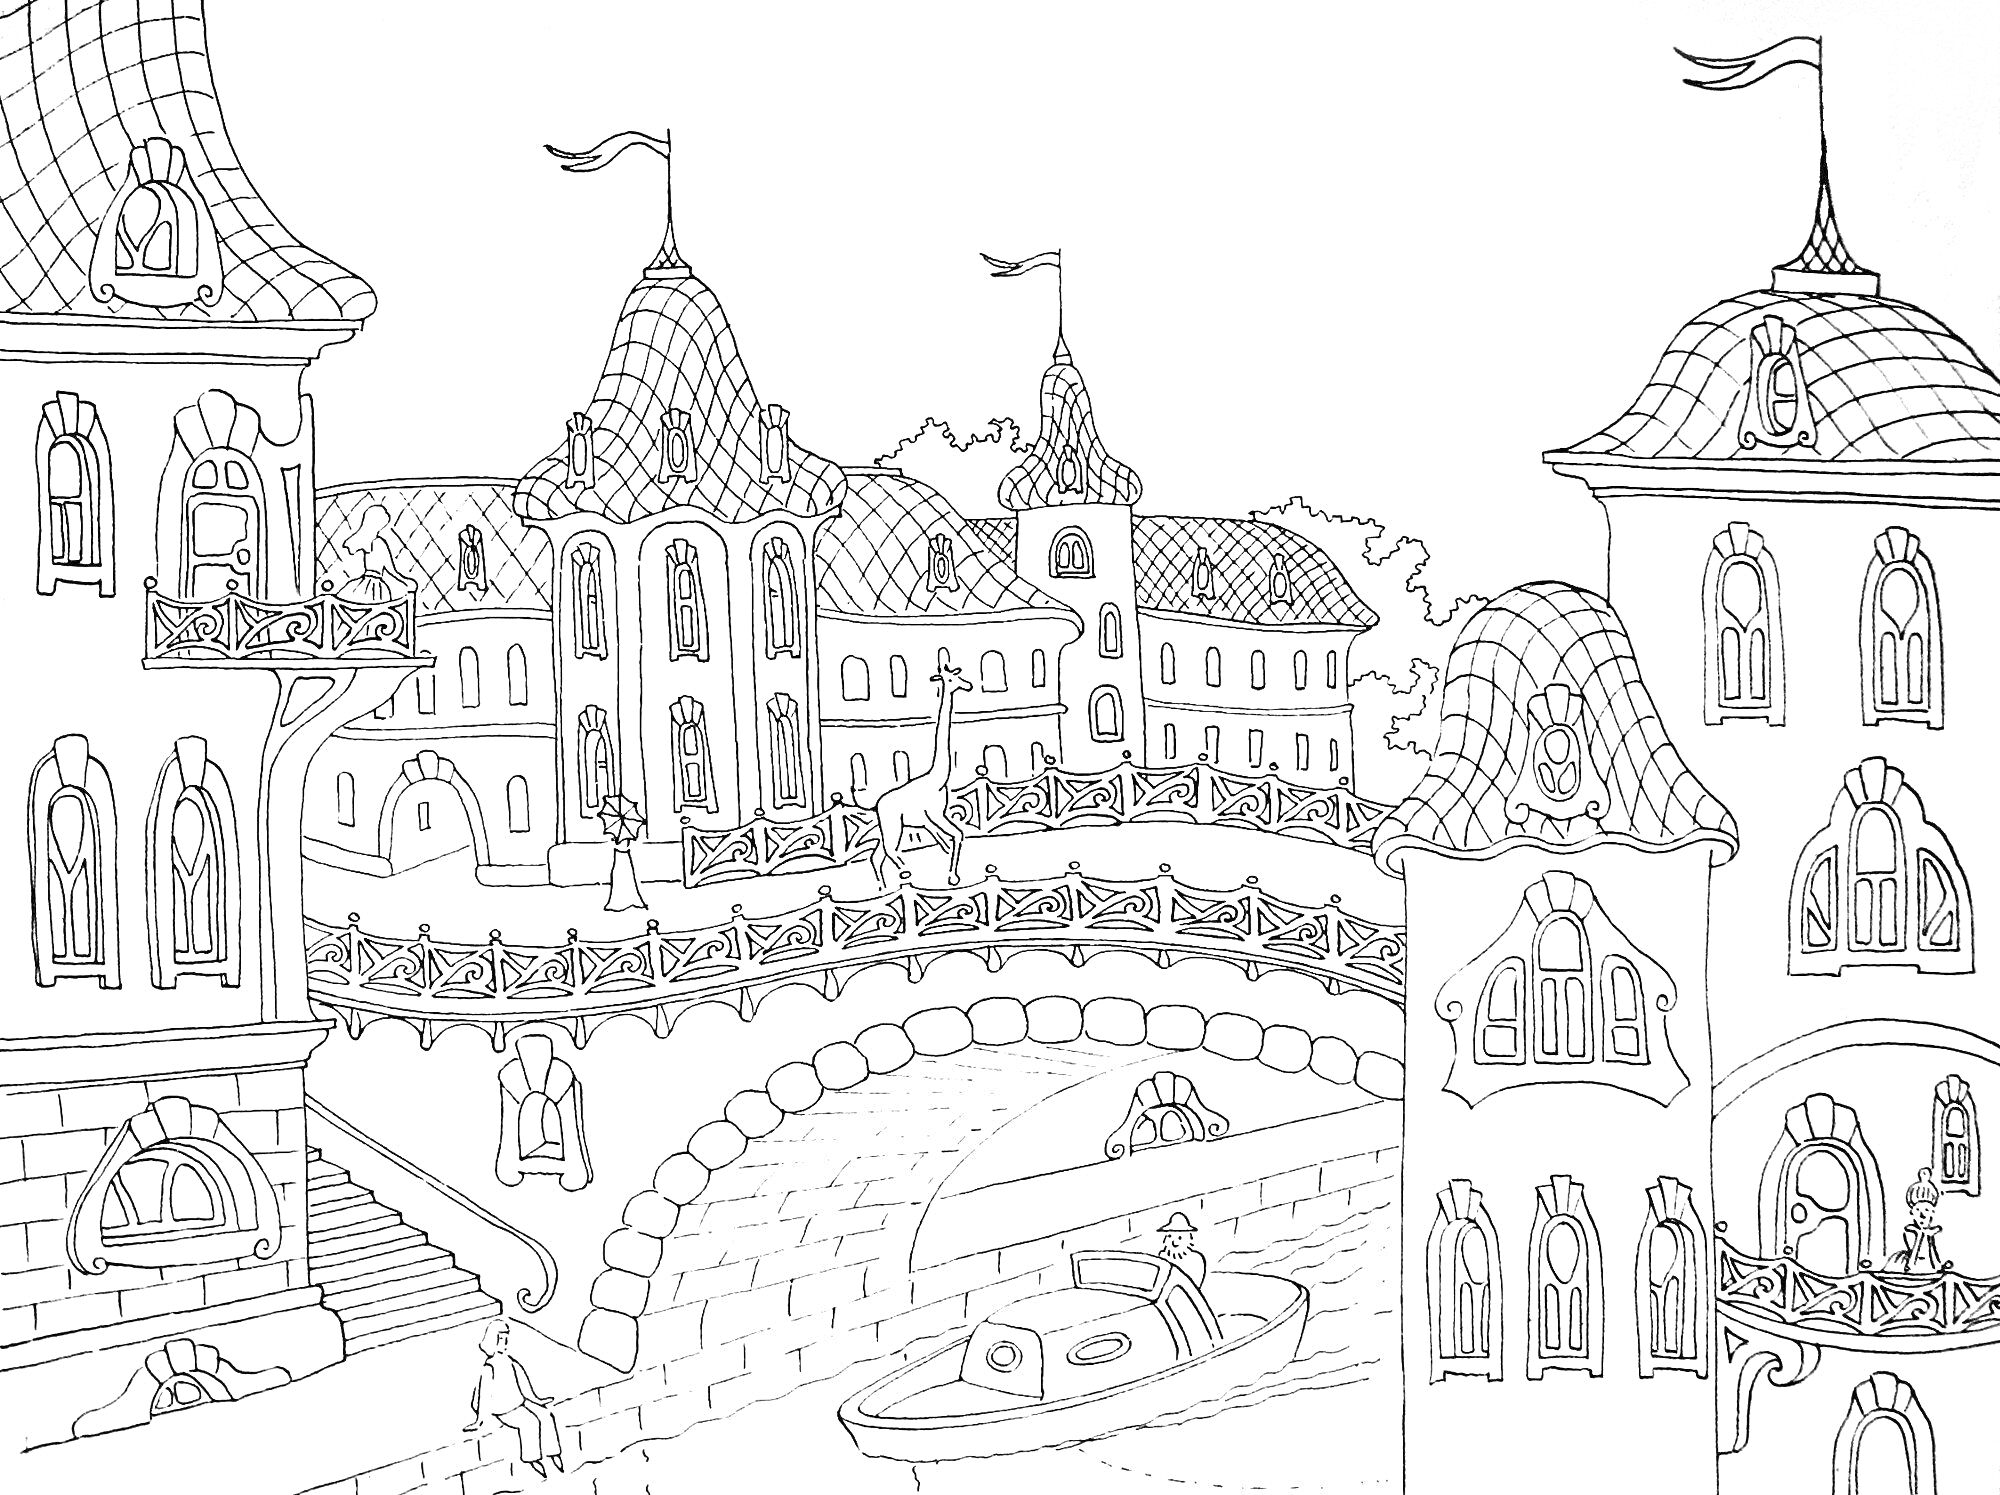 Раскраска Антистресс город с мостом, зданиями с узорчатыми крышами, флагами и лодкой на реке